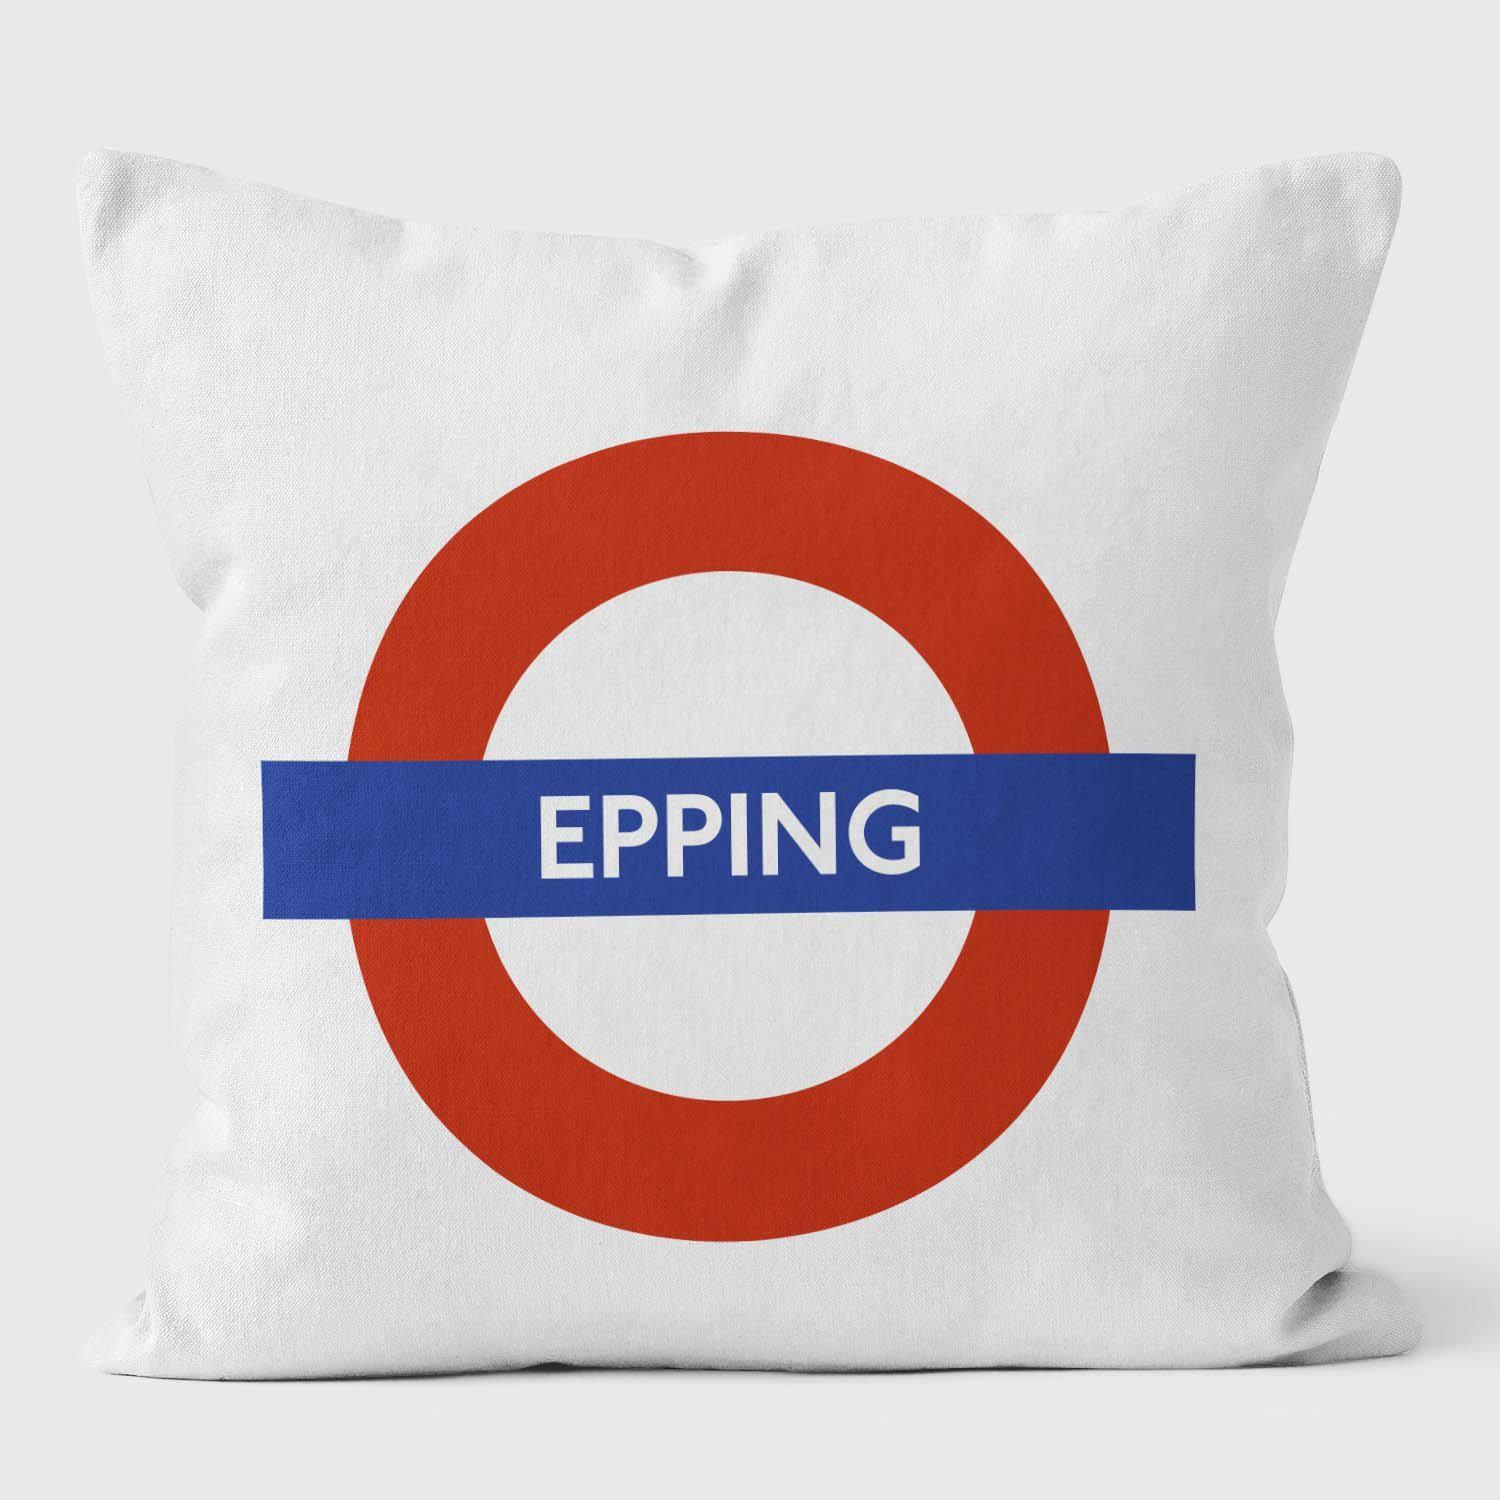 Epping London Underground Tube Station Roundel Cushion - Handmade Cushions UK - WeLoveCushions